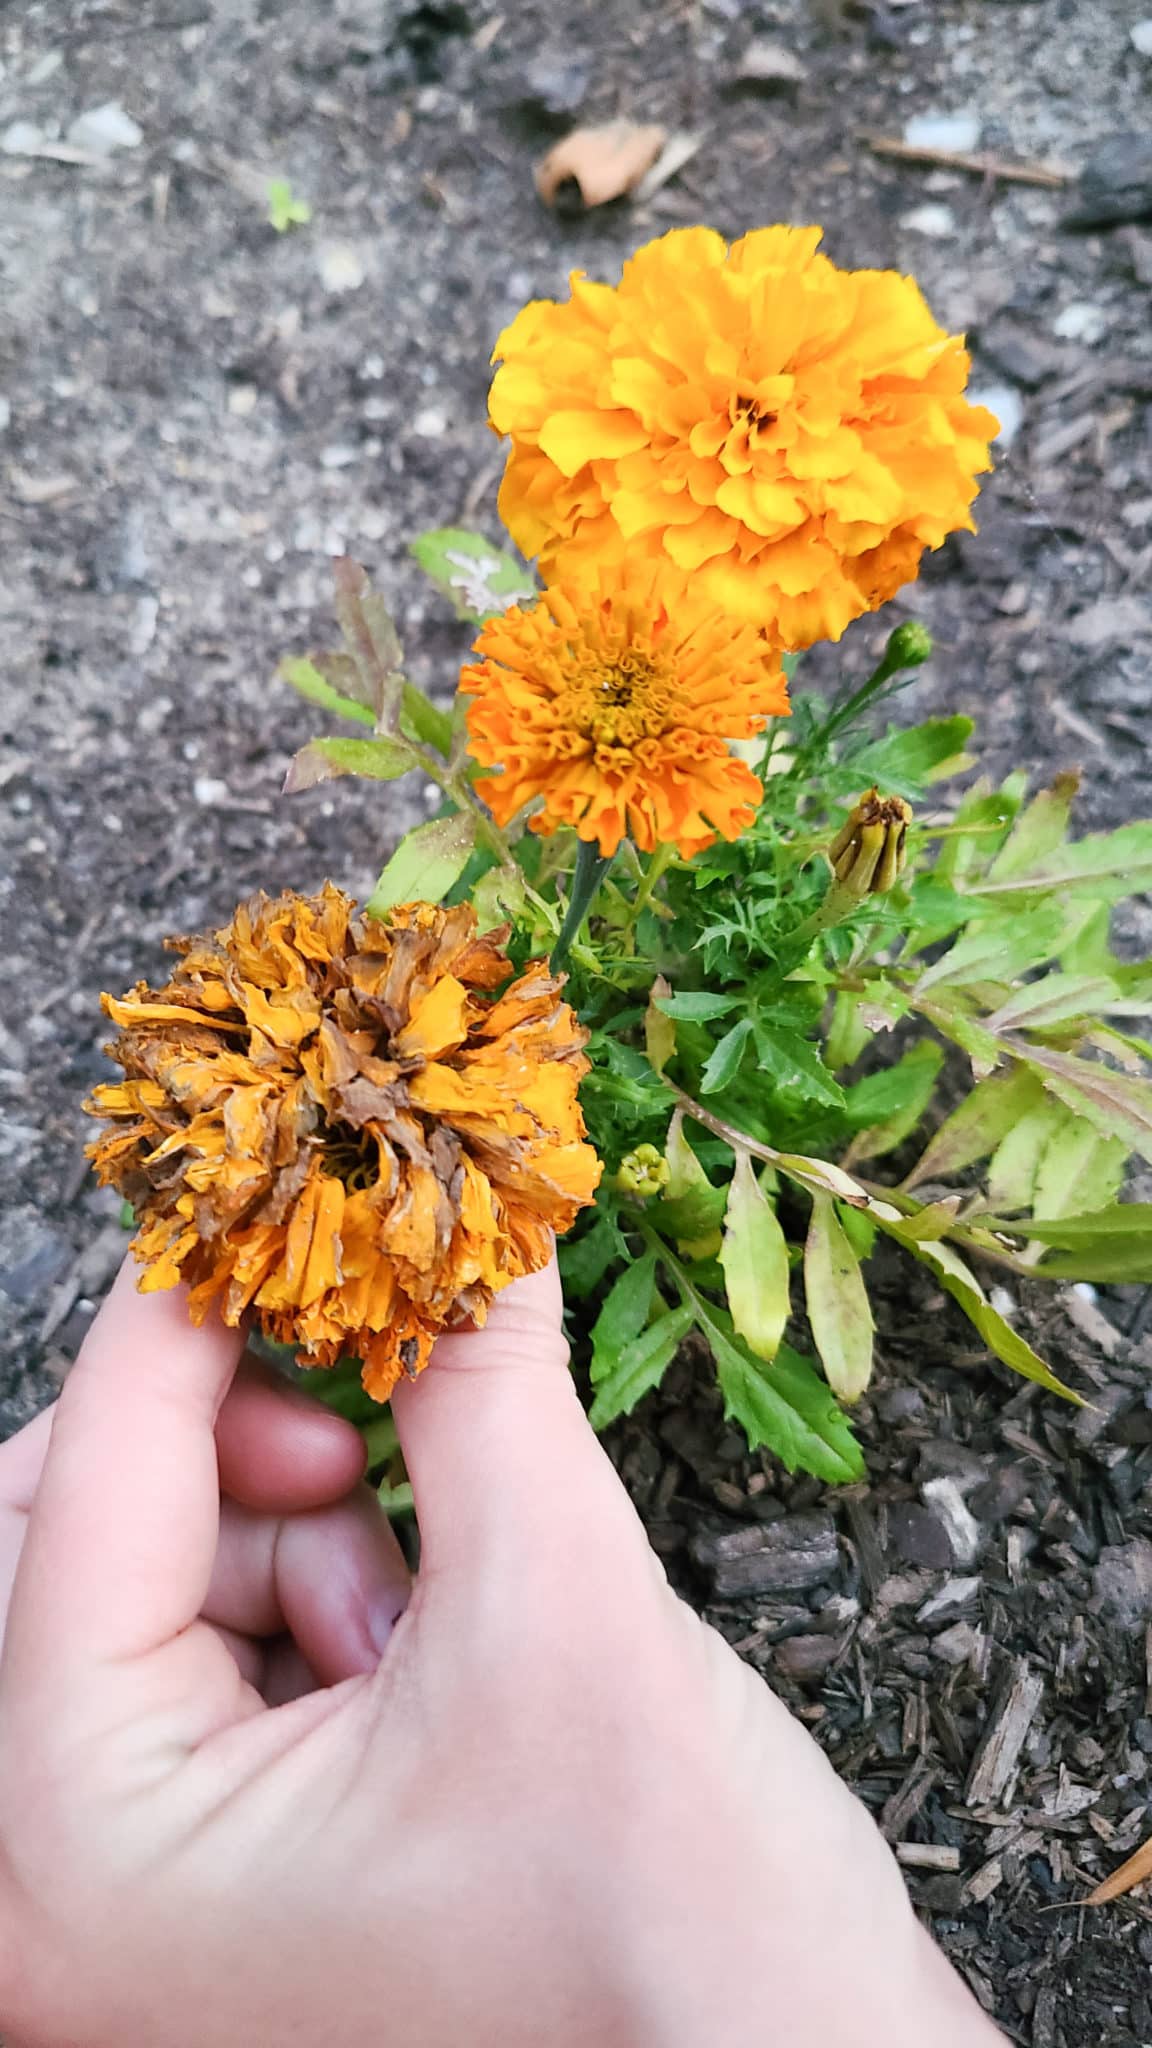 Beginner garden tips showing marigolds